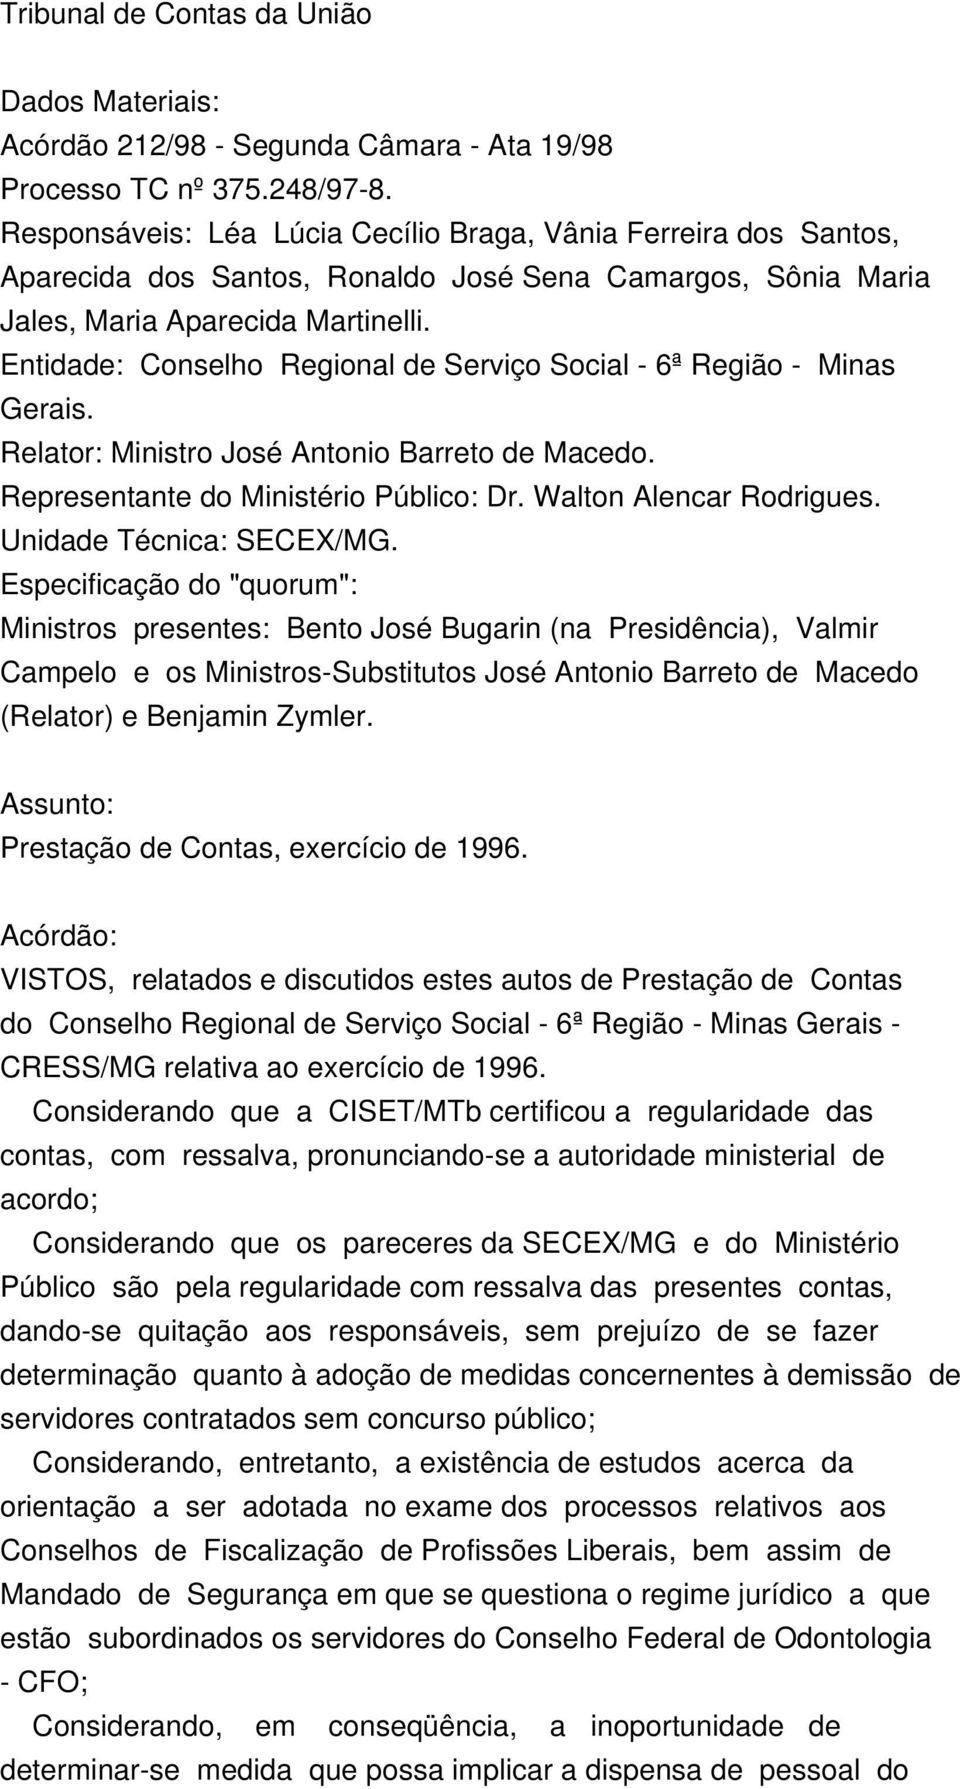 Entidade: Conselho Regional de Serviço Social - 6ª Região - Minas Gerais. Relator: Ministro José Antonio Barreto de Macedo. Representante do Ministério Público: Dr. Walton Alencar Rodrigues.